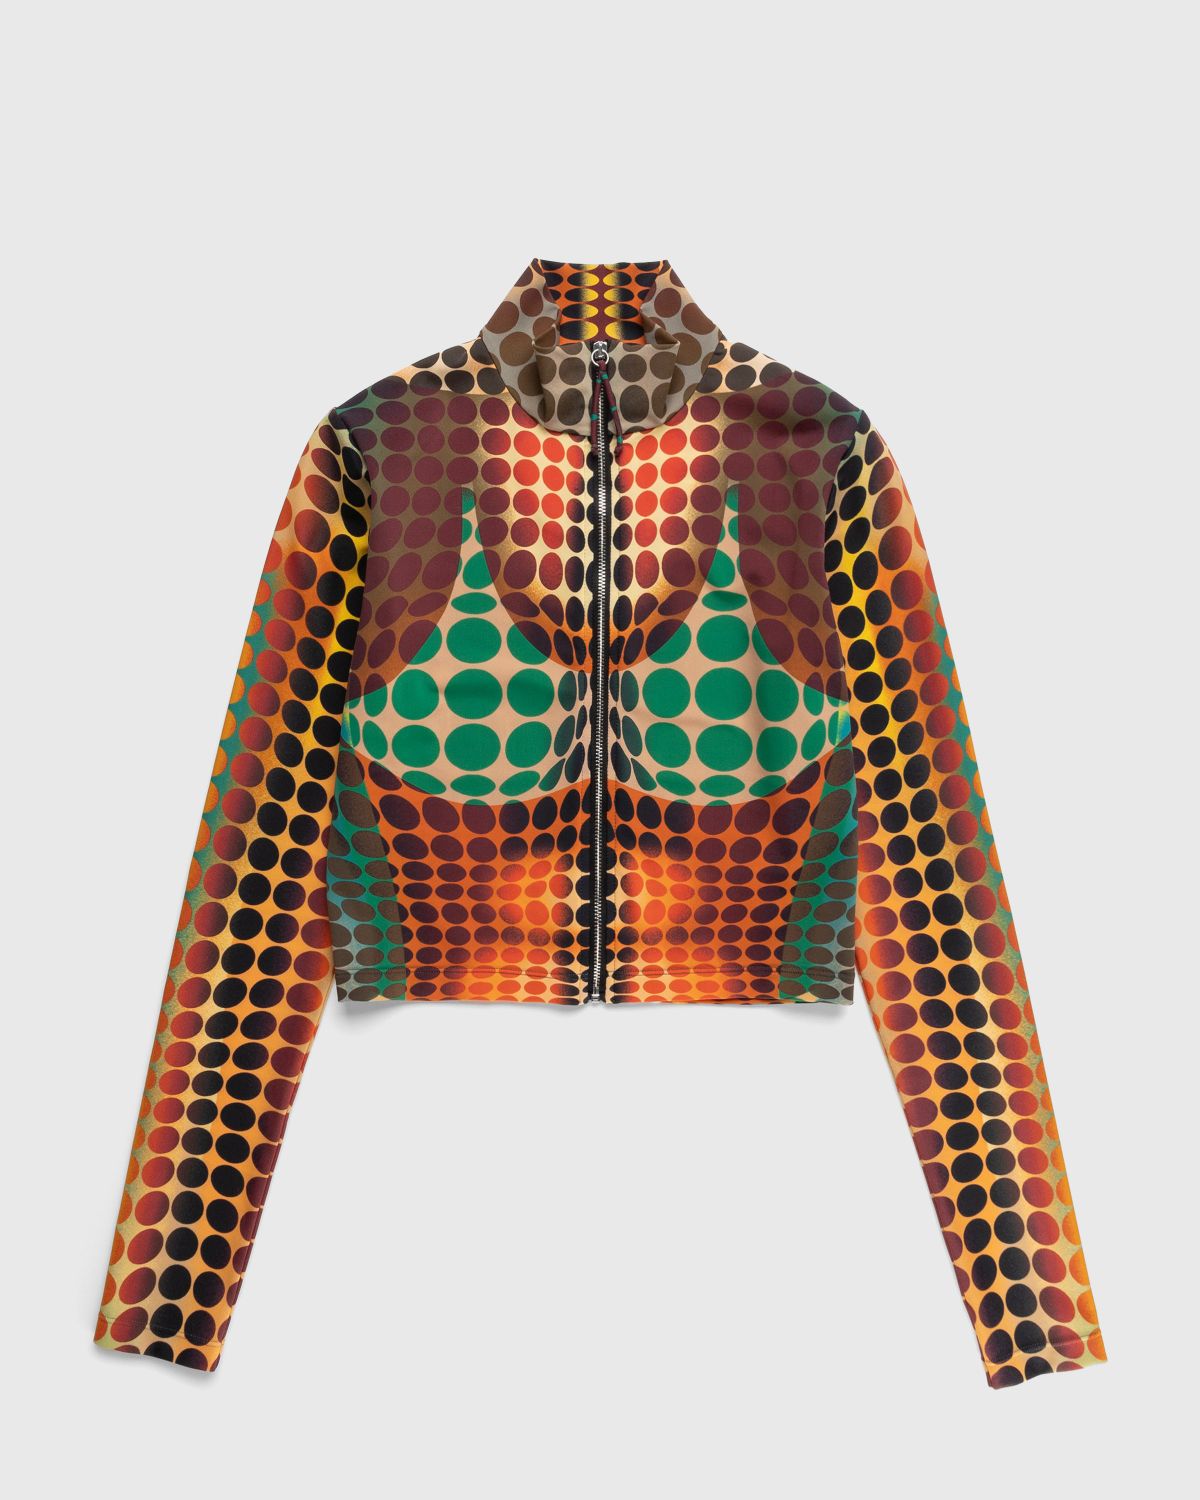 Jean Paul Gaultier – Zip High Neck Longsleeve Top Orange - Longsleeves - Orange - Image 1